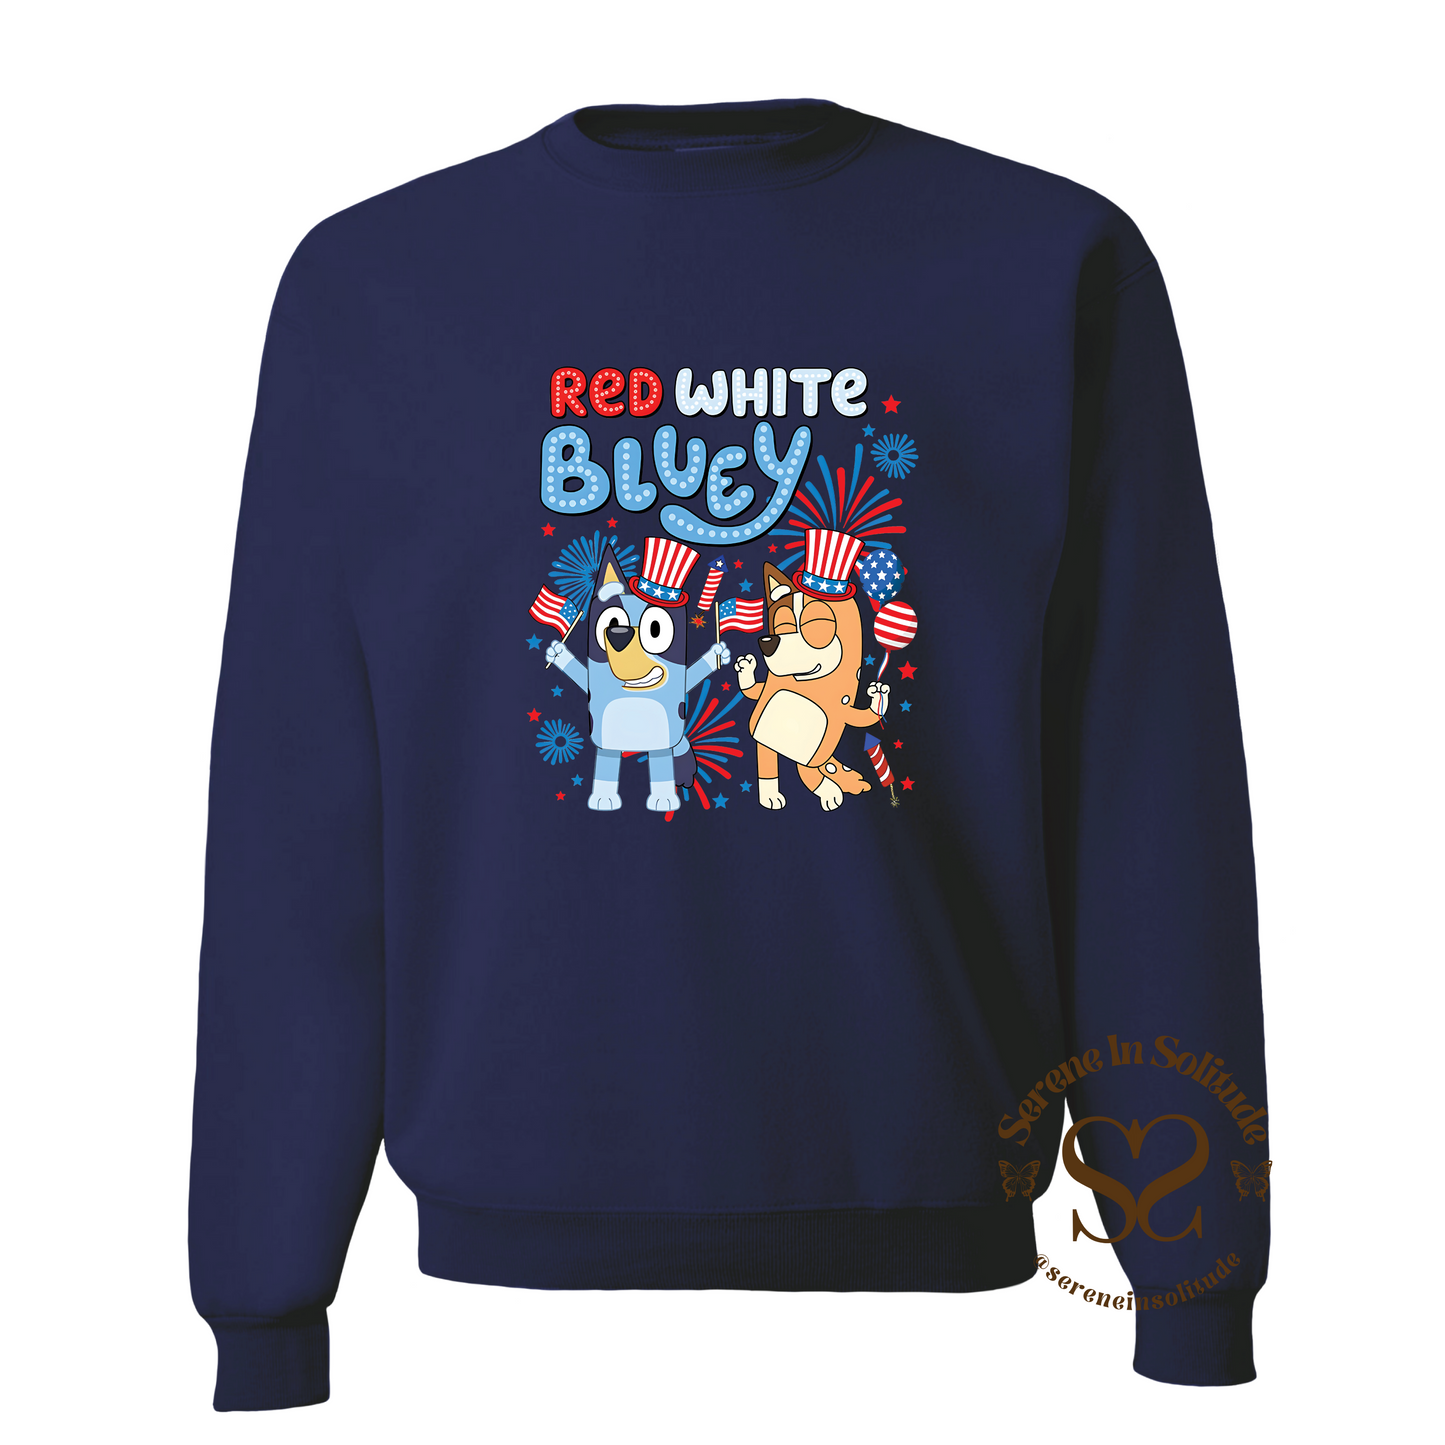 Red White Bluey Sweatshirt